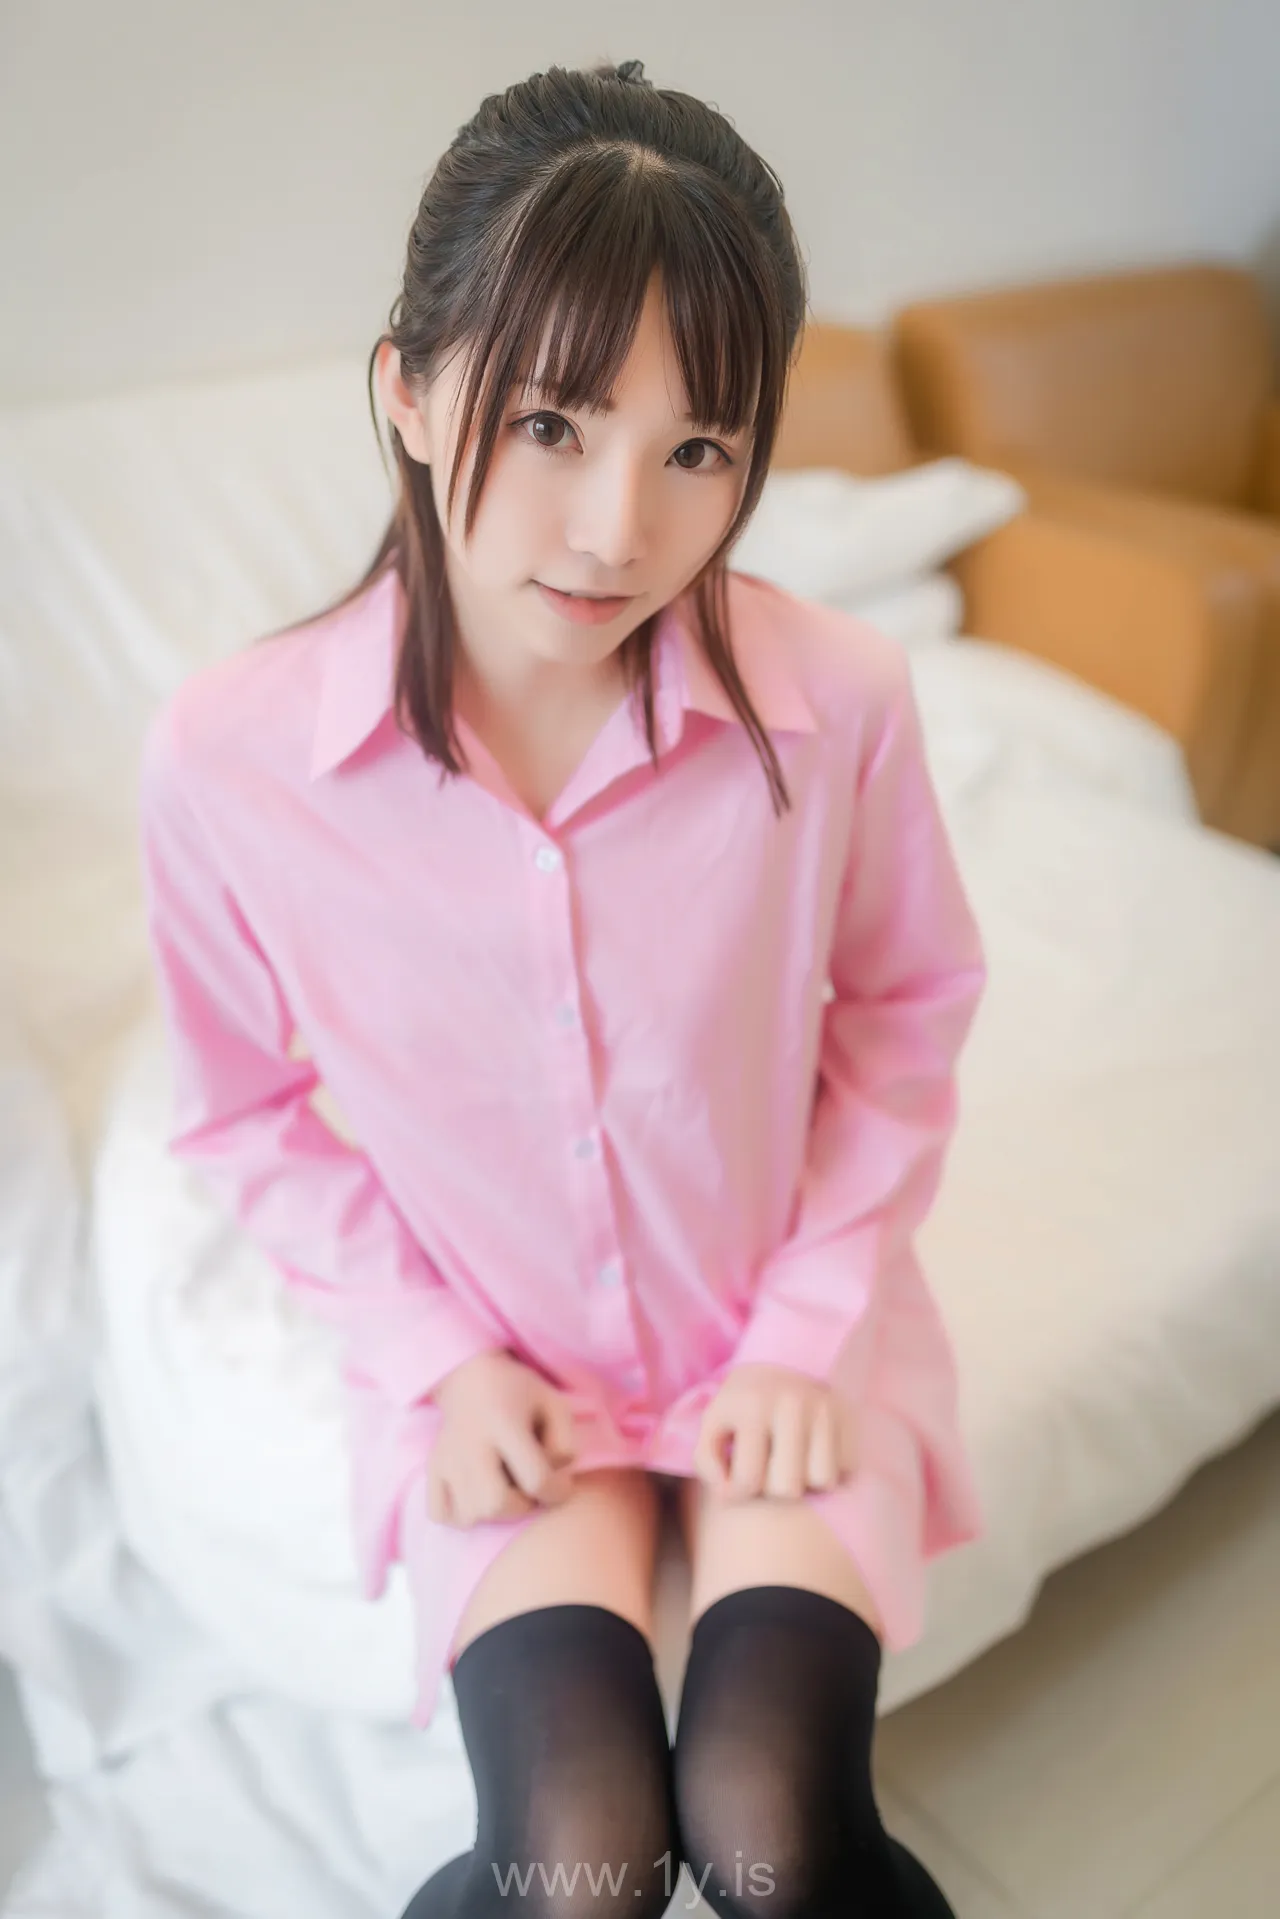 绮太郎 粉色衬衫